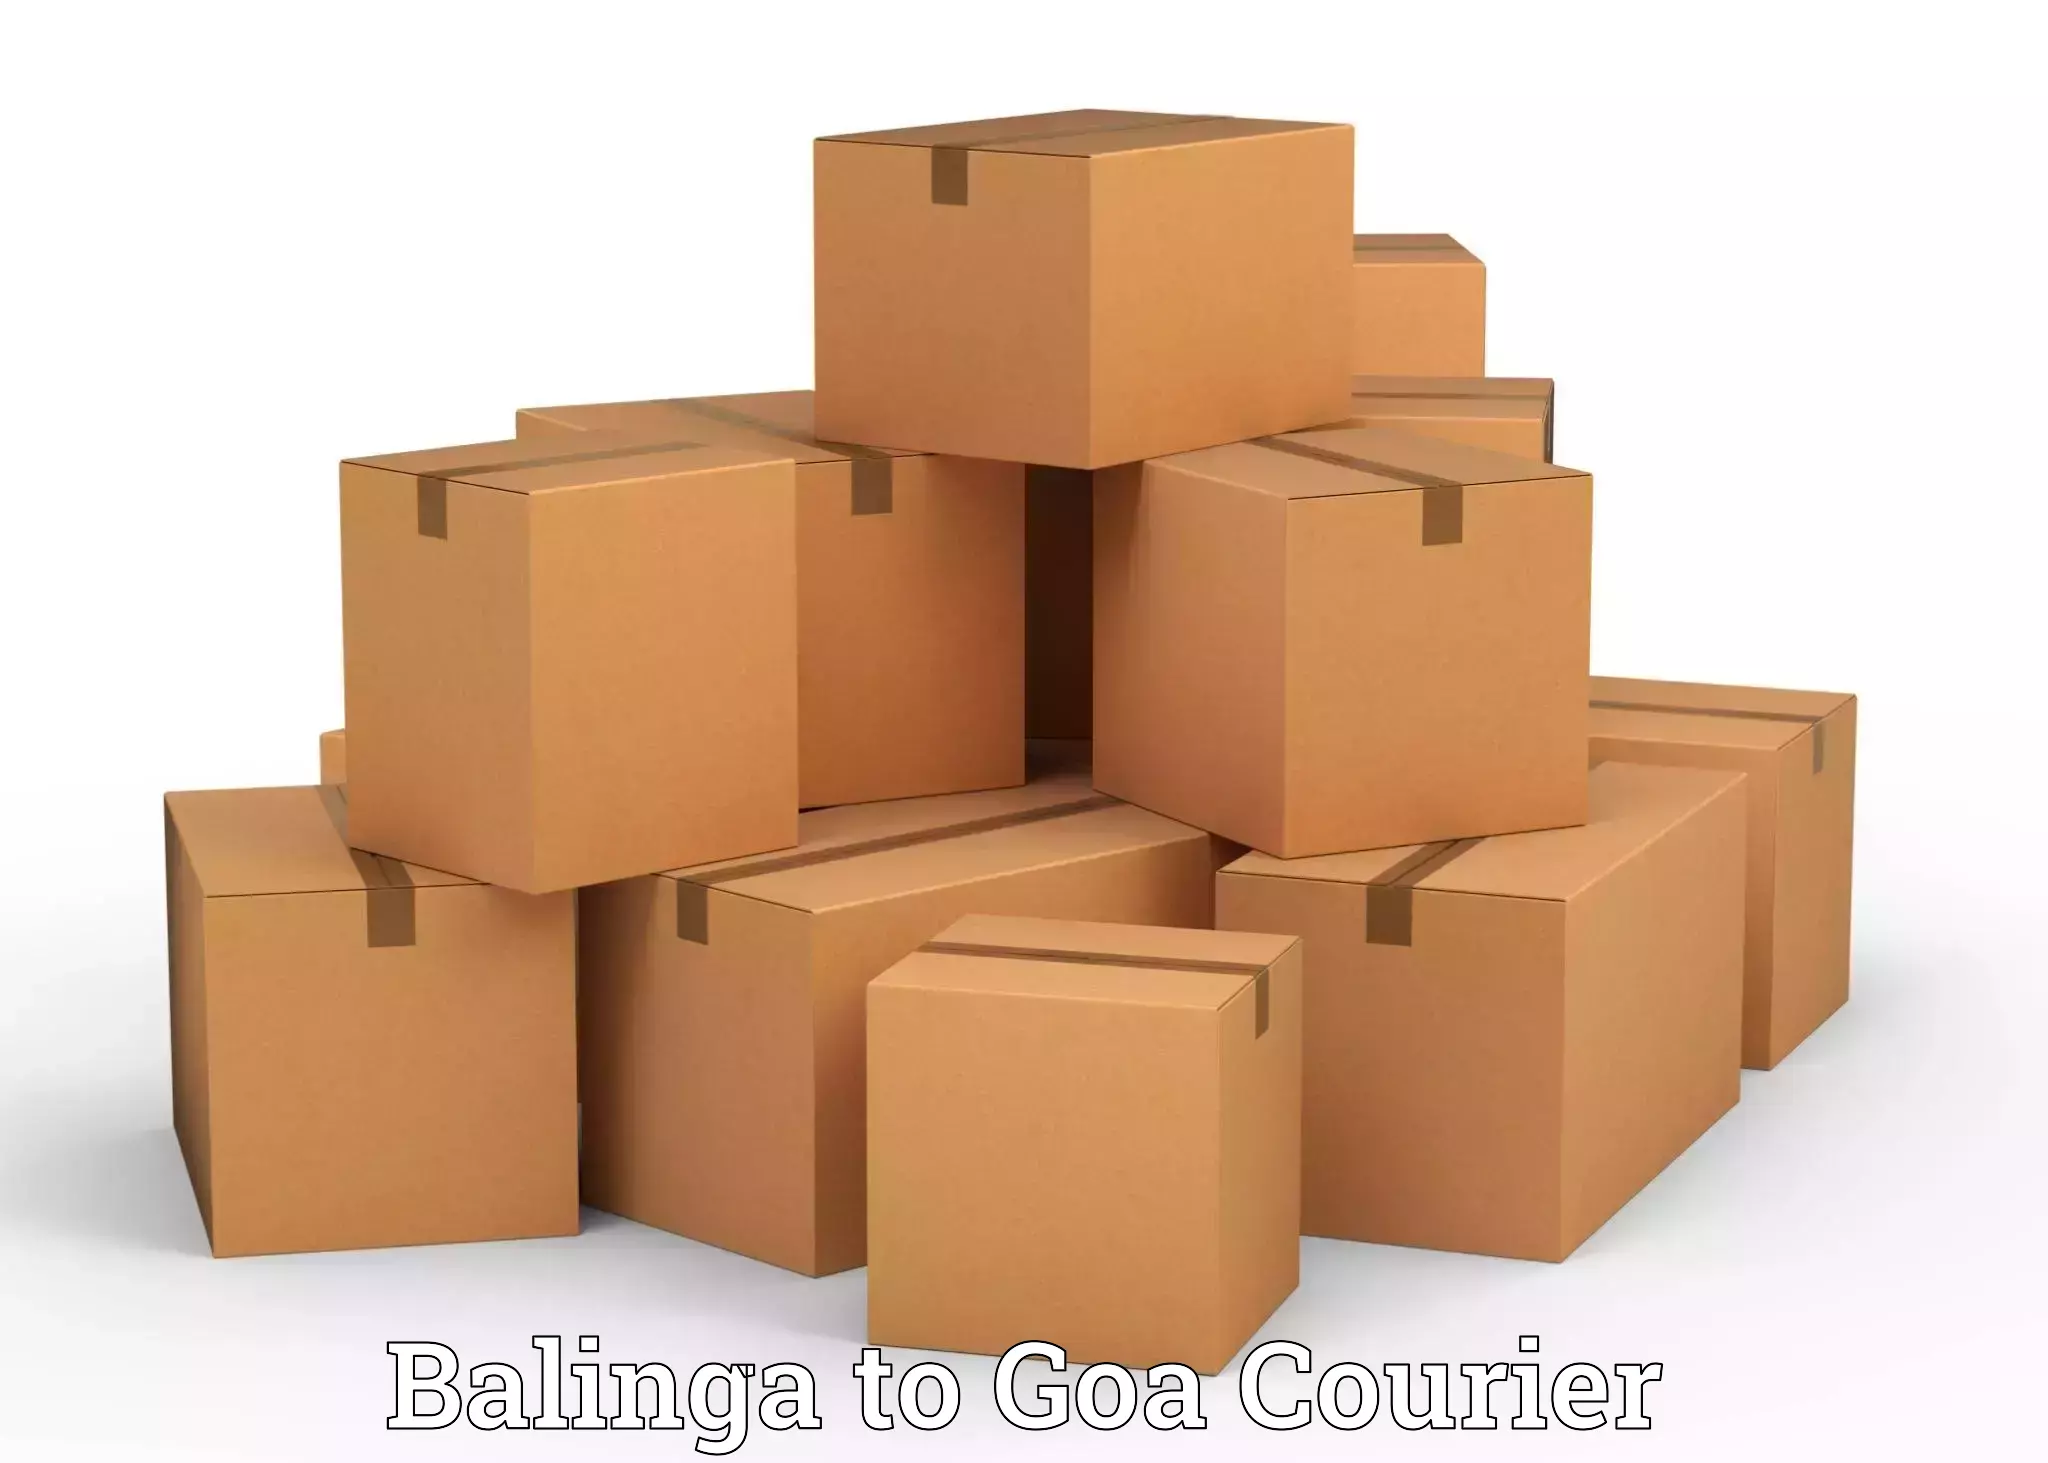 Easy furniture transport Balinga to Goa